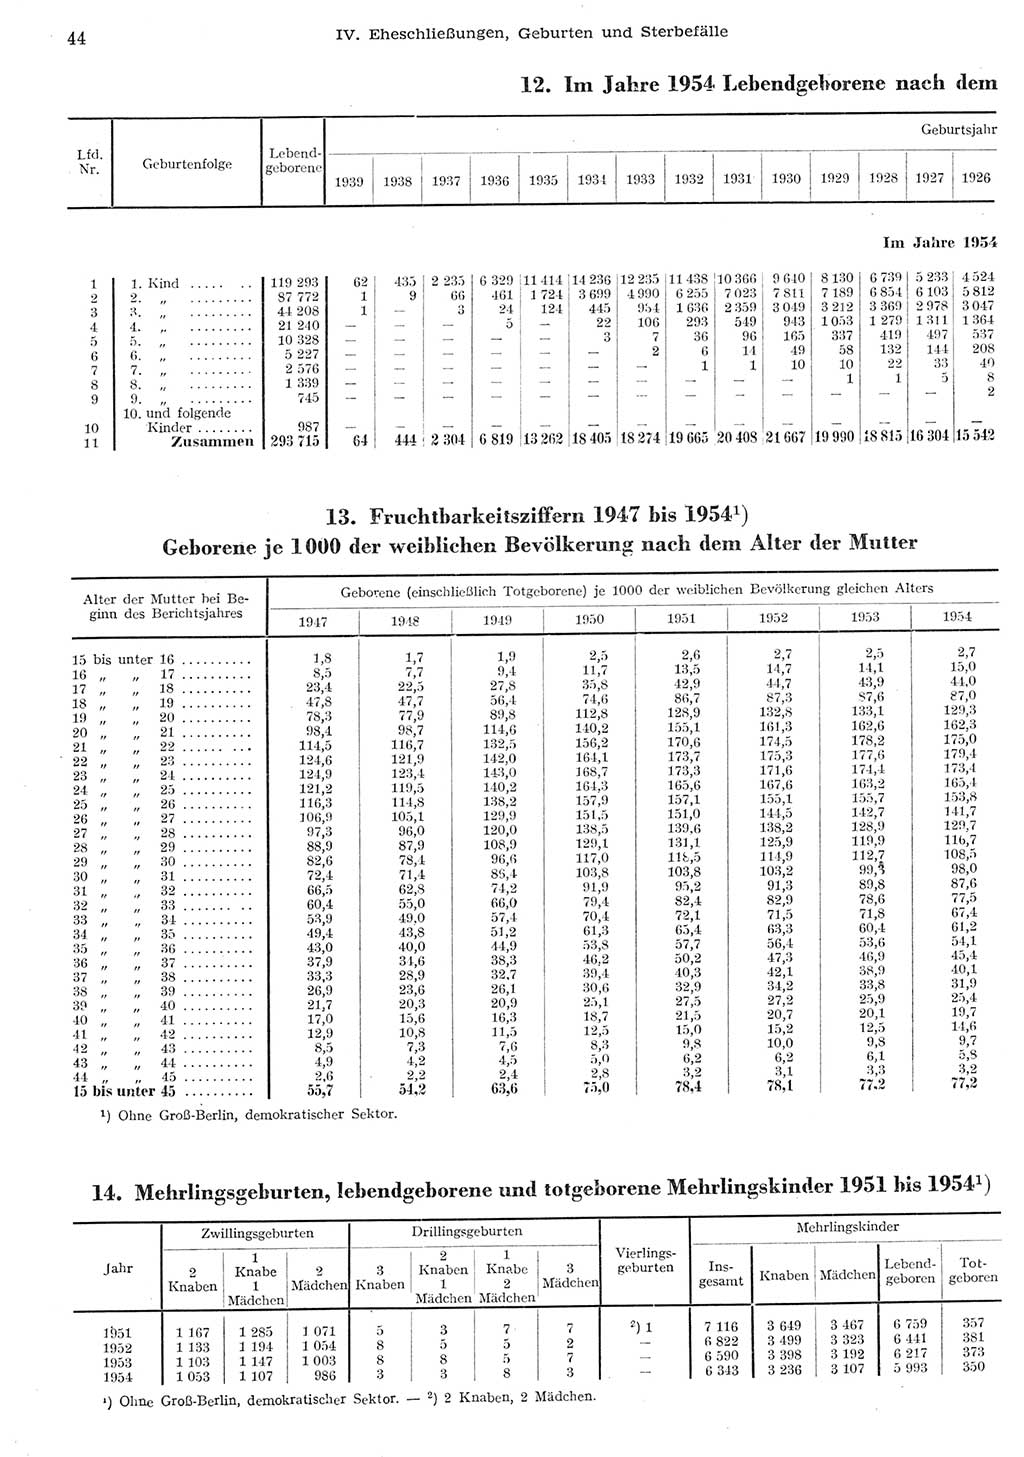 Statistisches Jahrbuch der Deutschen Demokratischen Republik (DDR) 1955, Seite 44 (Stat. Jb. DDR 1955, S. 44)